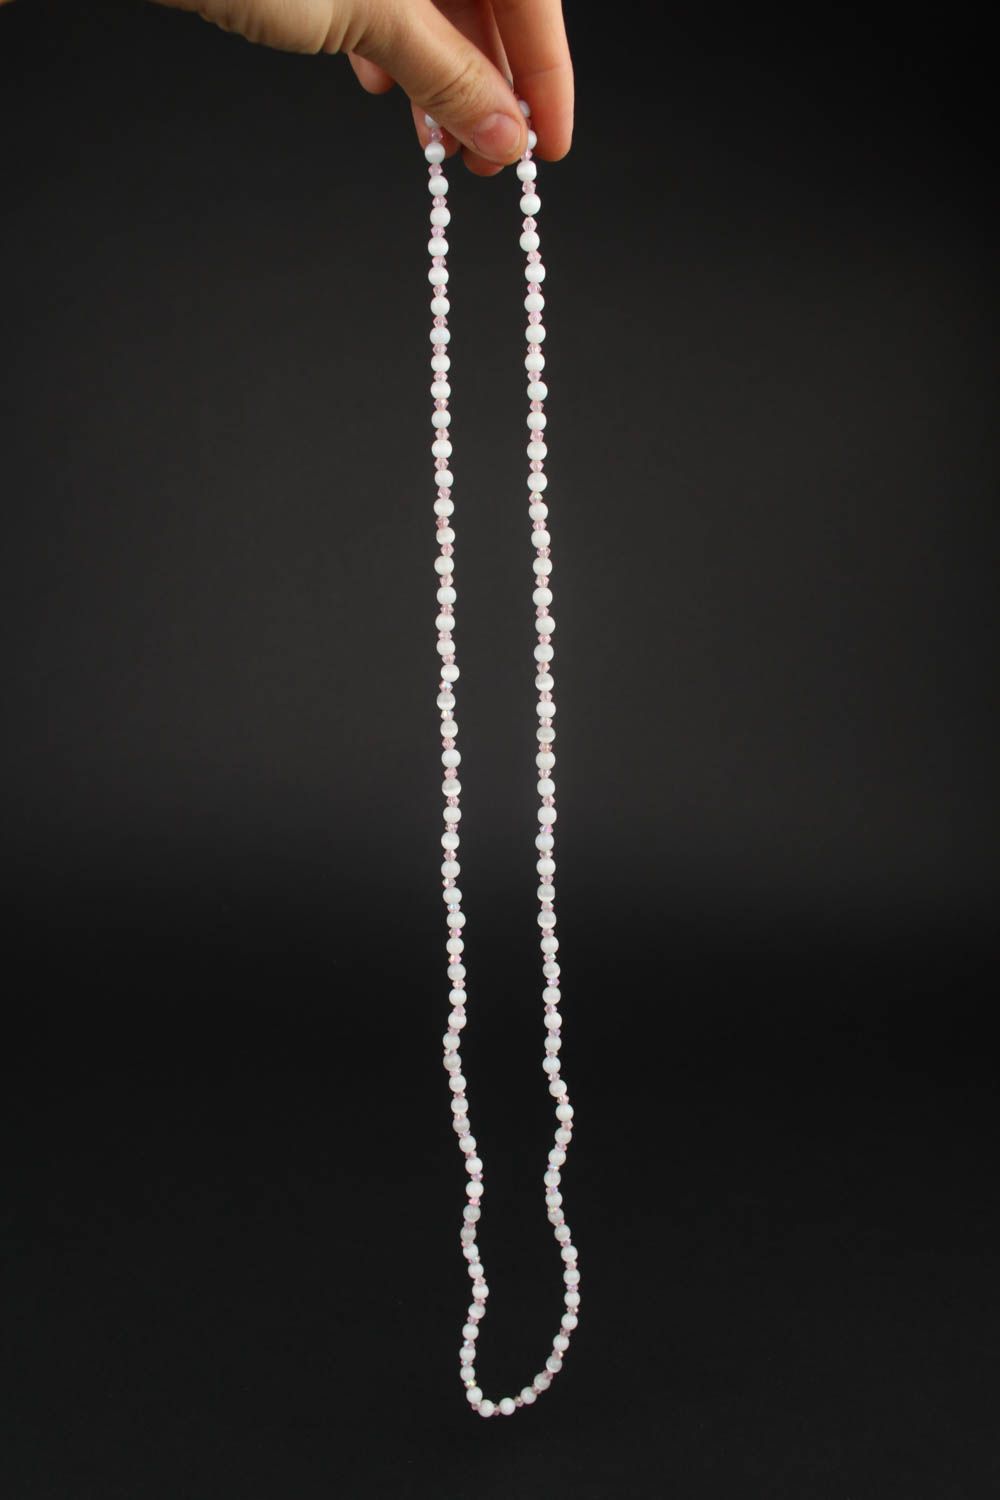 Handmade designer elegant necklace stylish white necklace festive accessory photo 3